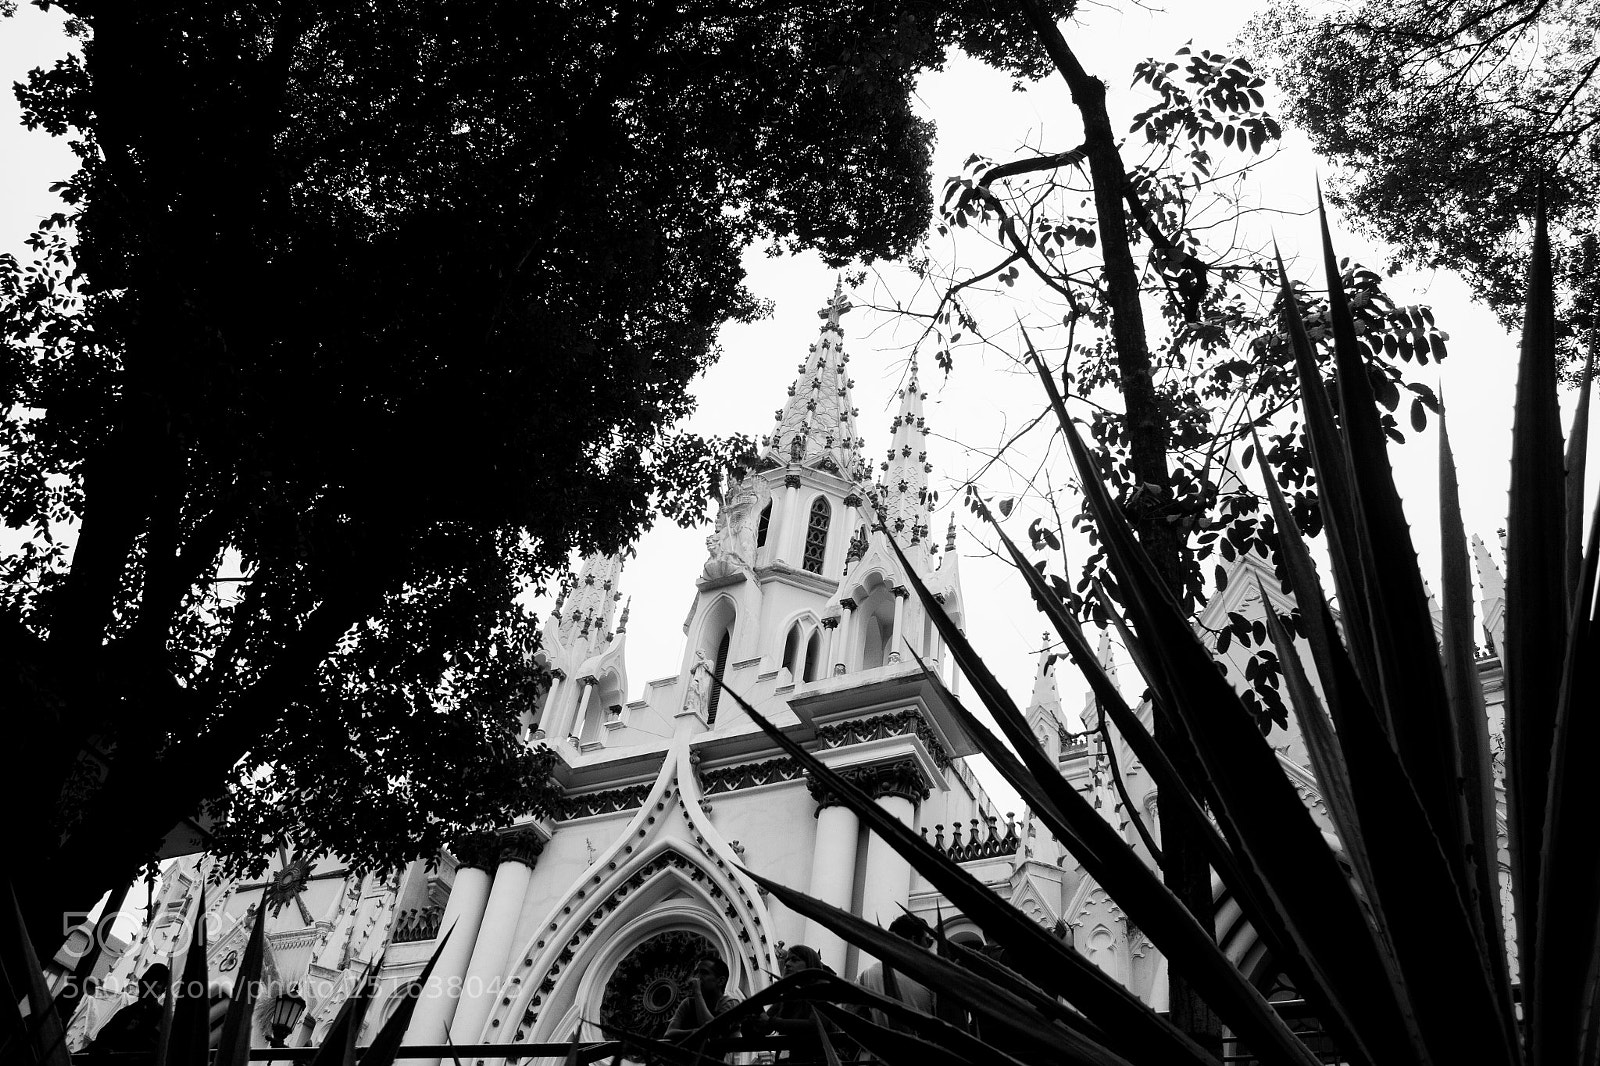 Canon EOS 60D sample photo. Iglesia santa capilla photography